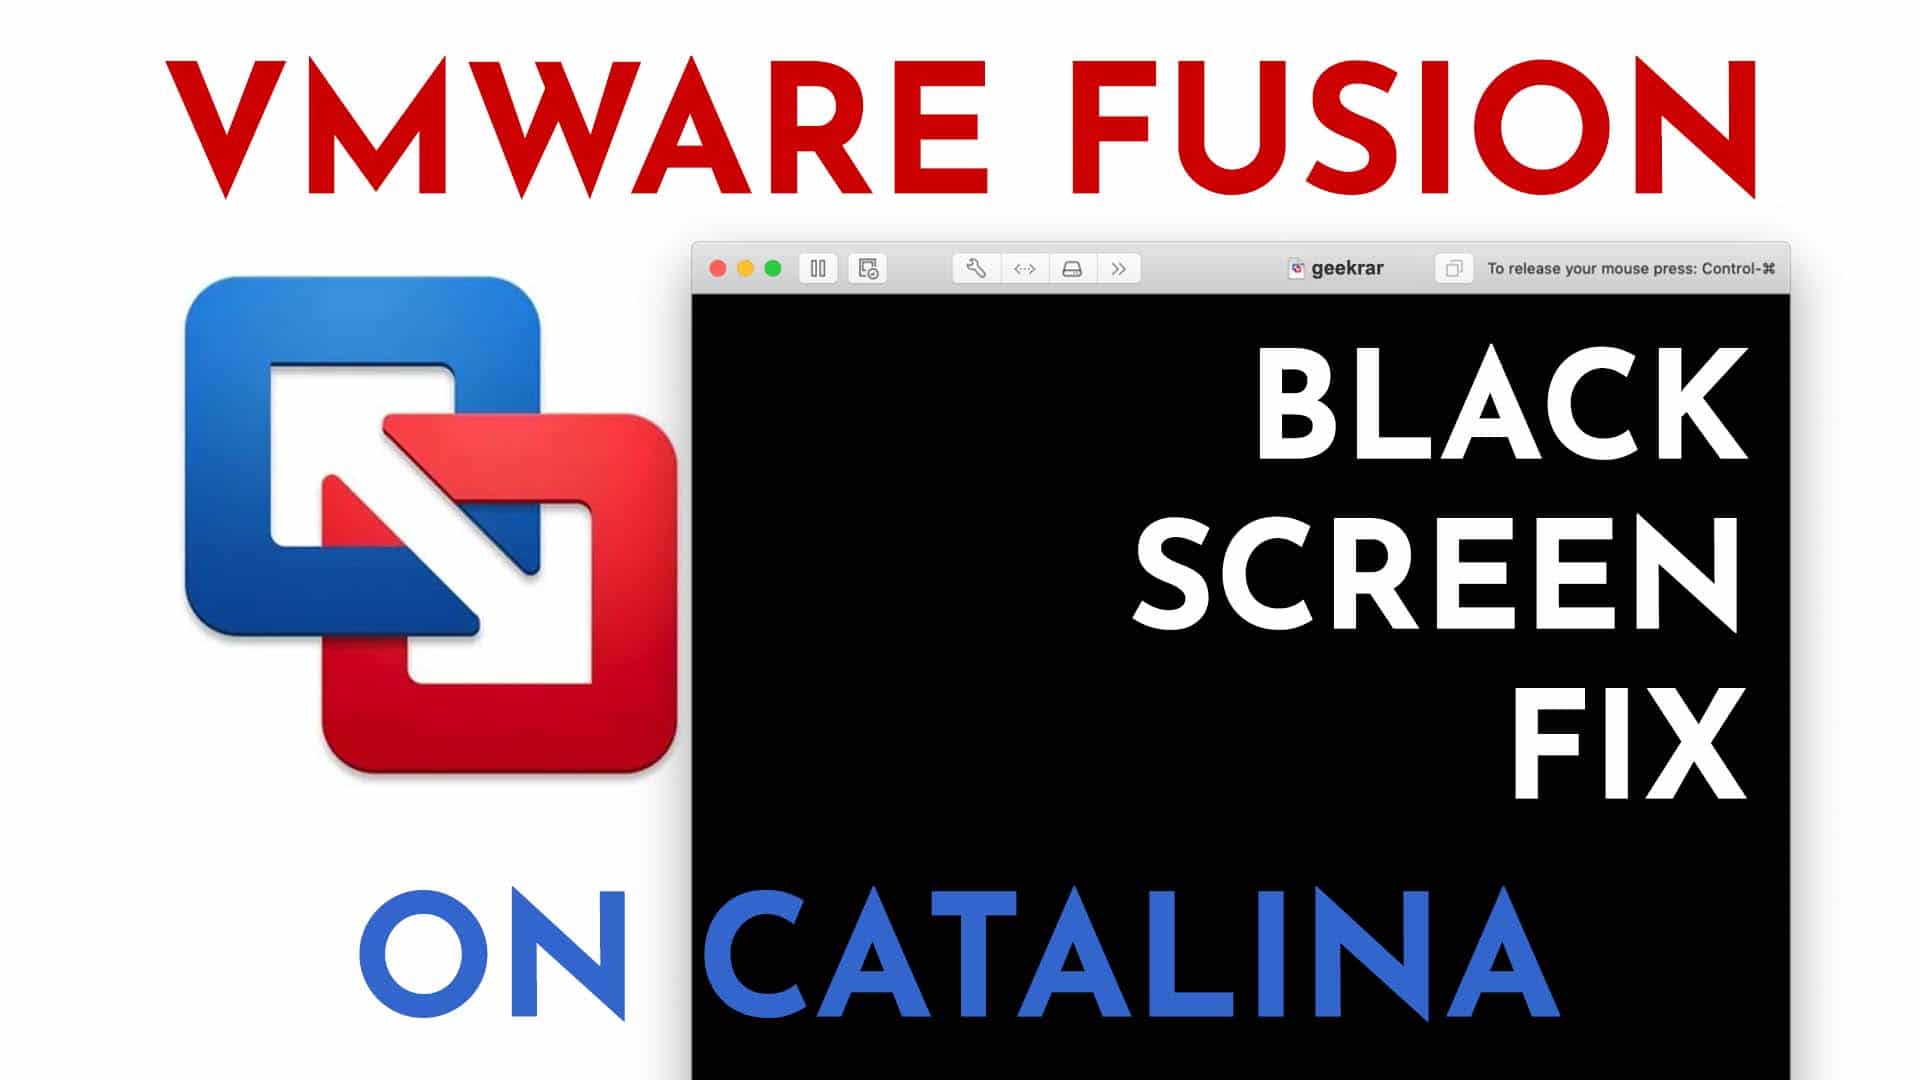 vmware fusion catalina black screen